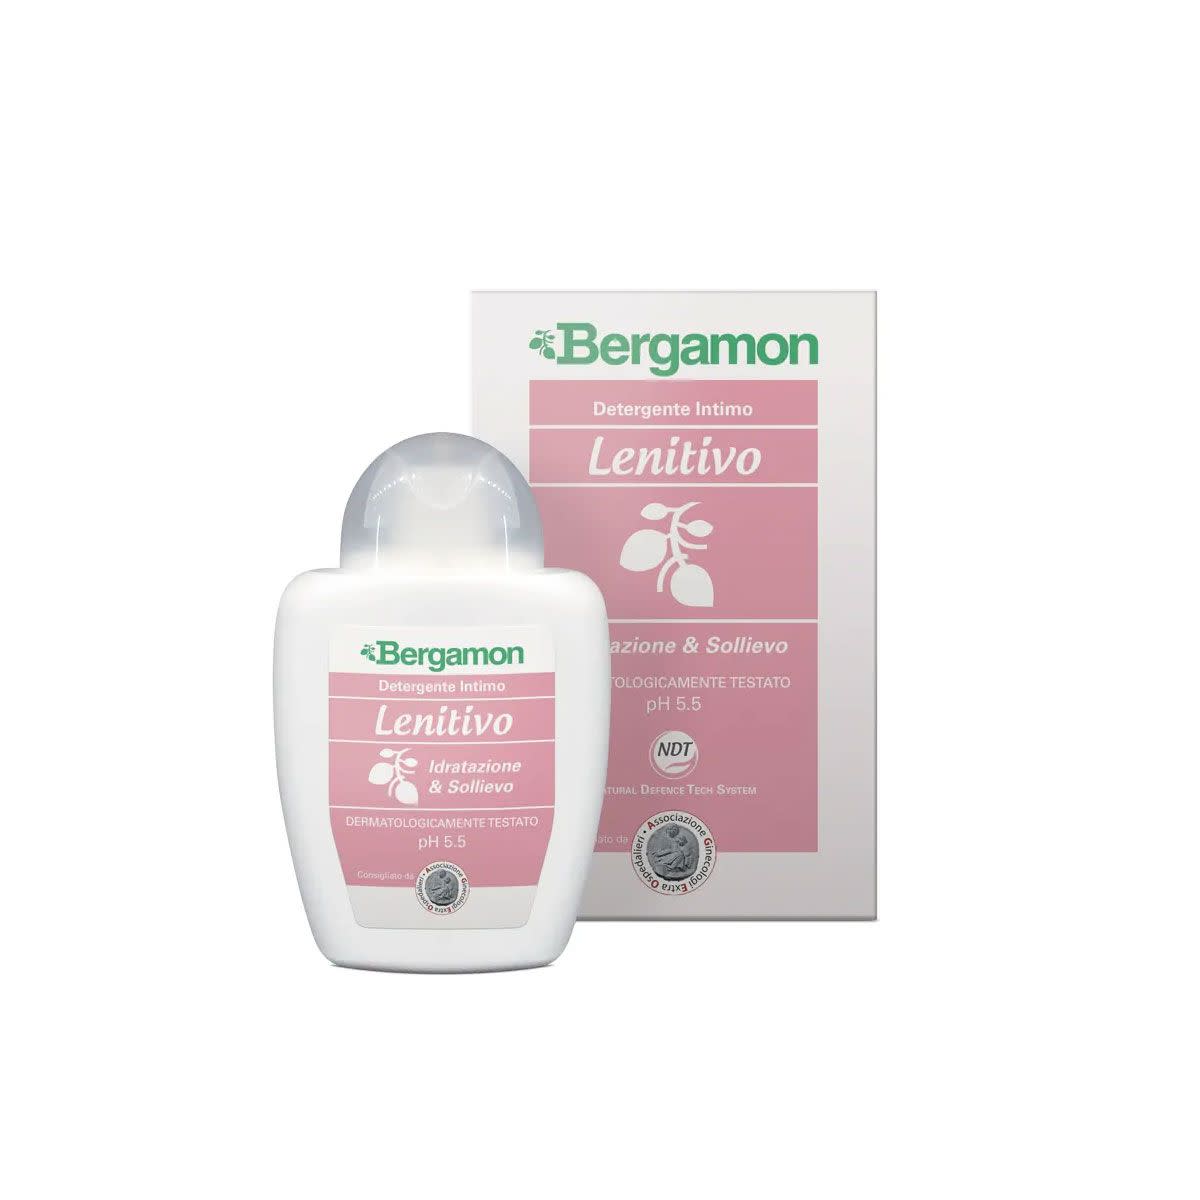 975520990 - Bergamon Detergente Intimo Lenitivo 200ml - 4732514_1.jpg